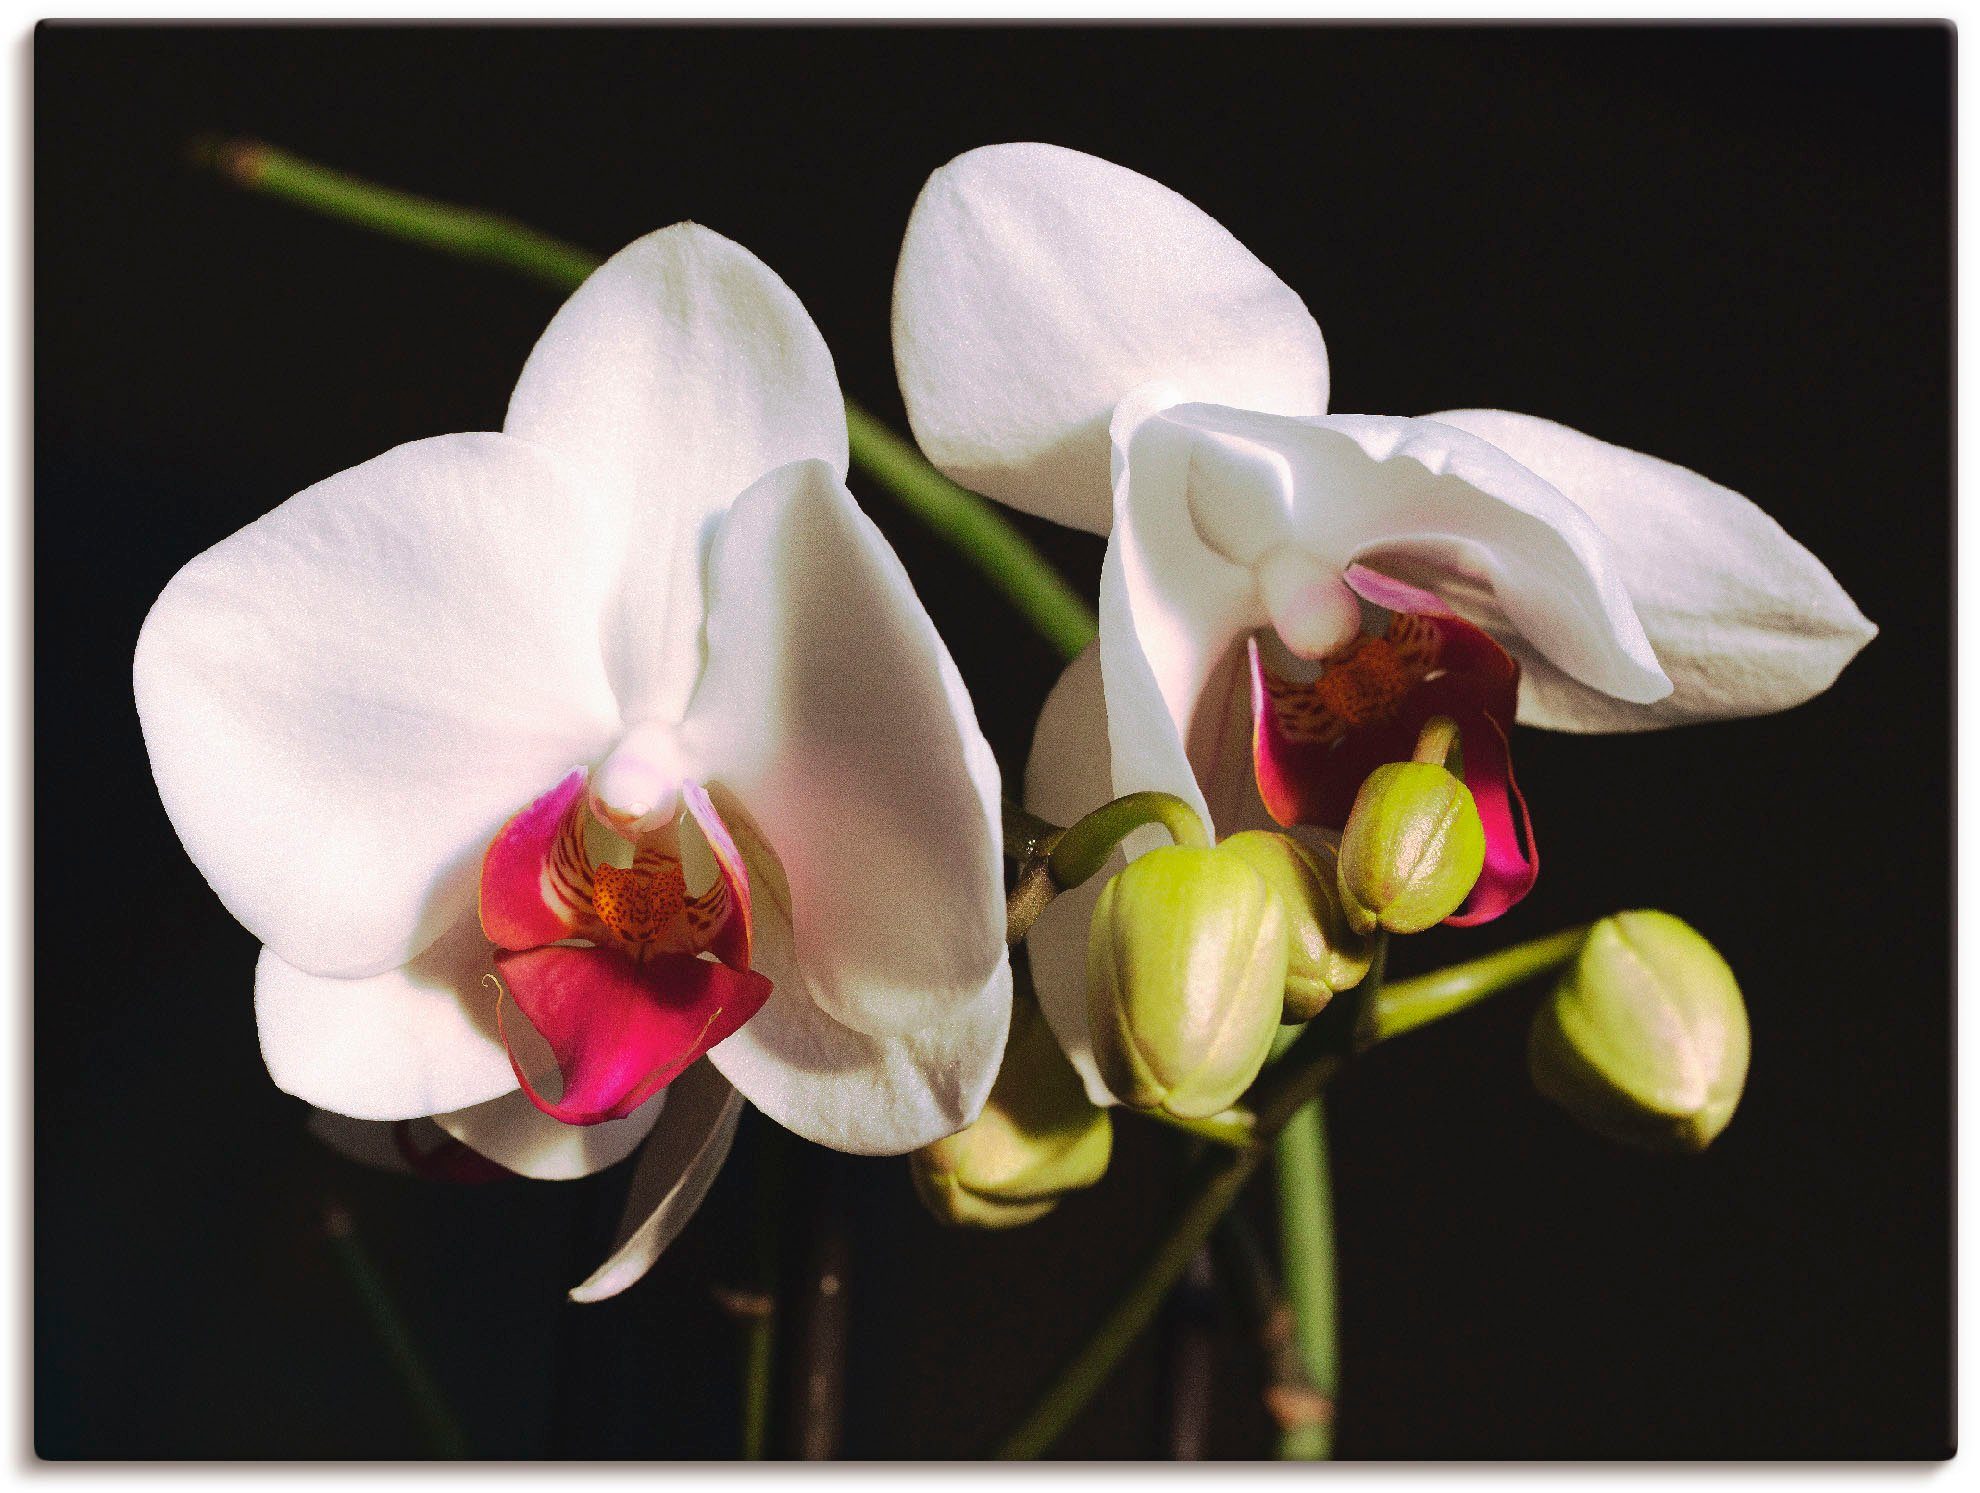 Artland Artprint Witte orchidee in vele afmetingen & productsoorten -artprint op linnen, poster, muursticker / wandfolie ook geschikt voor de badkamer (1 stuk)